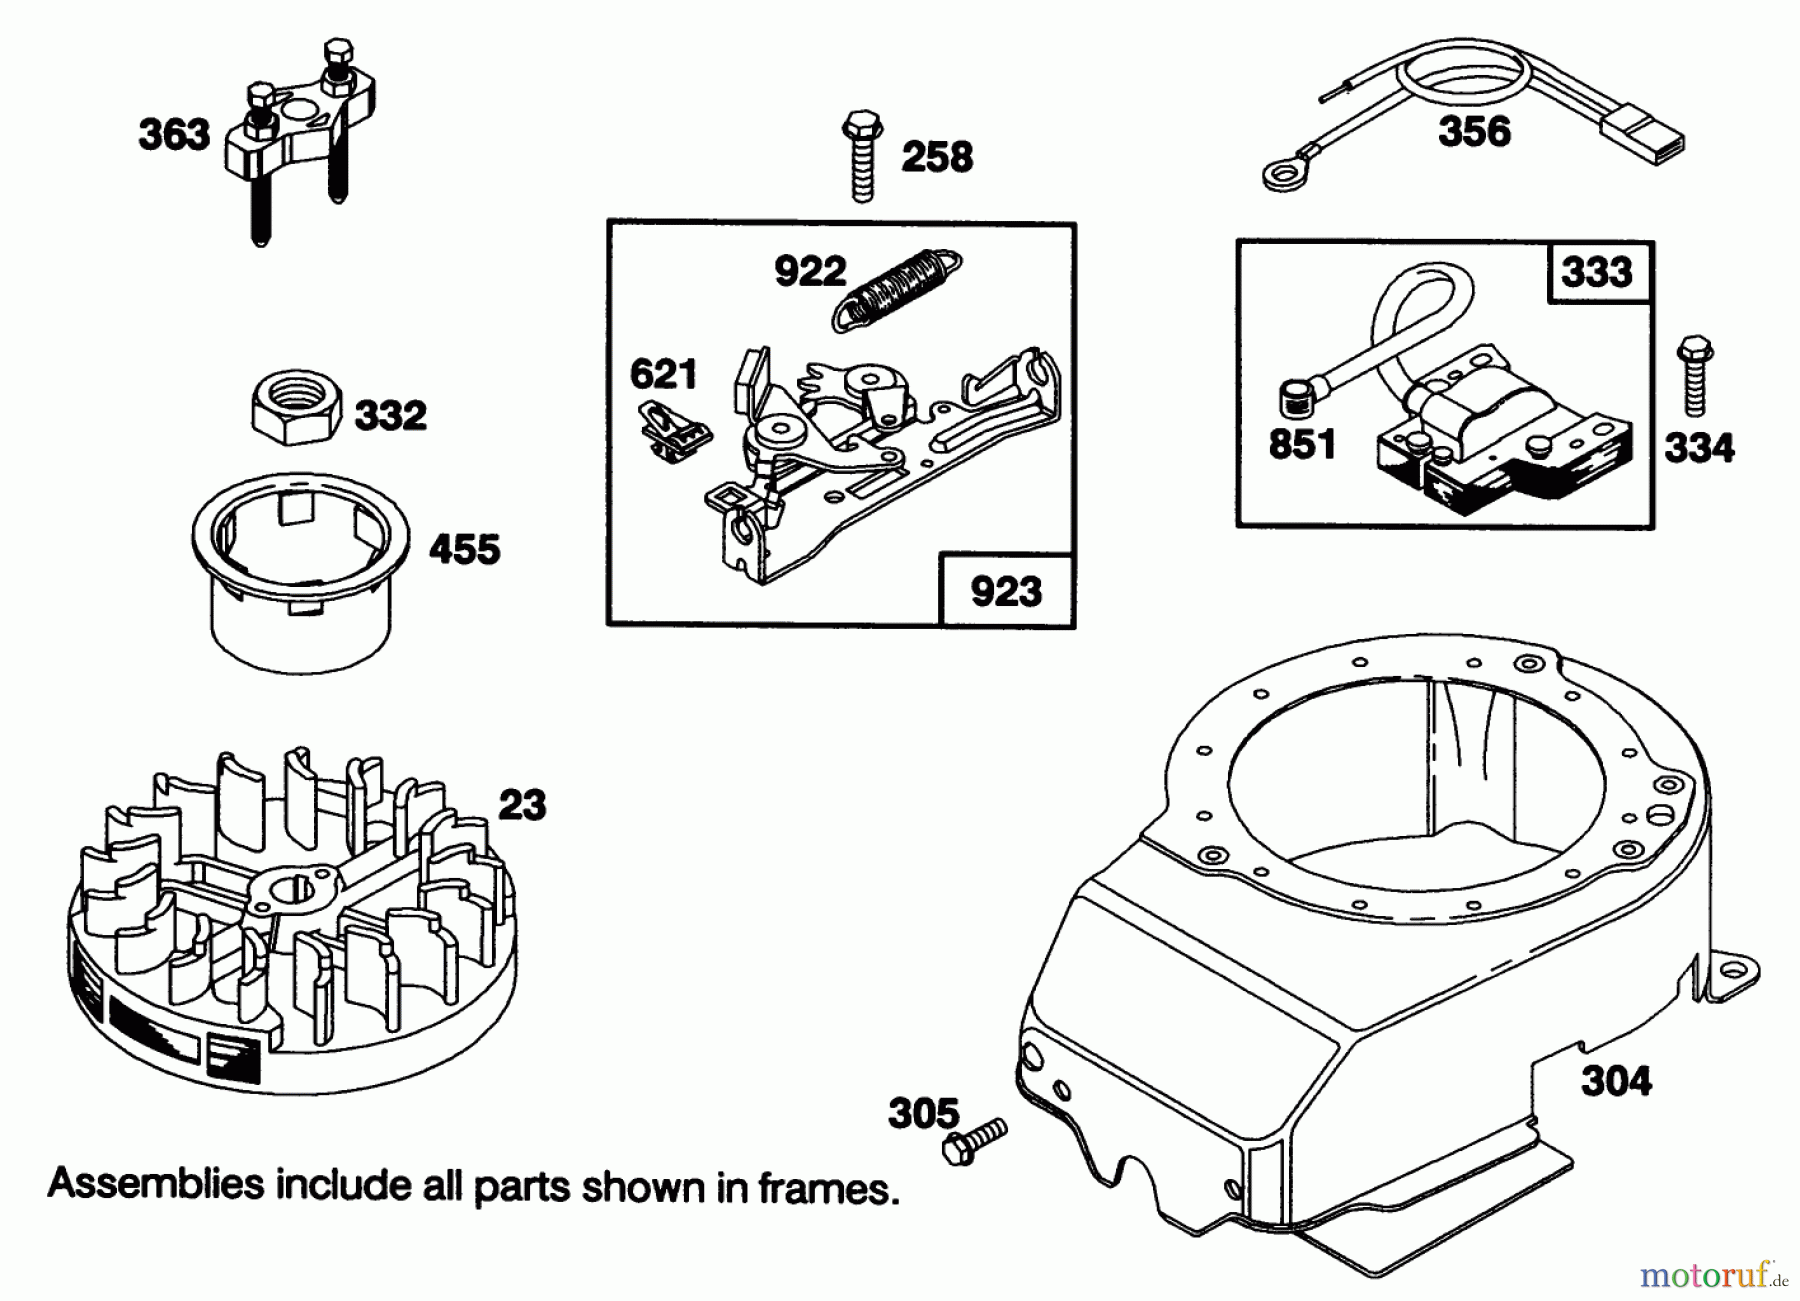  Toro Neu Mowers, Walk-Behind Seite 1 20215 - Toro Lawnmower, 1991 (1000001-1999999) ENGINE BRIGGS & STRATTON MODEL 122702-3171-01 #6